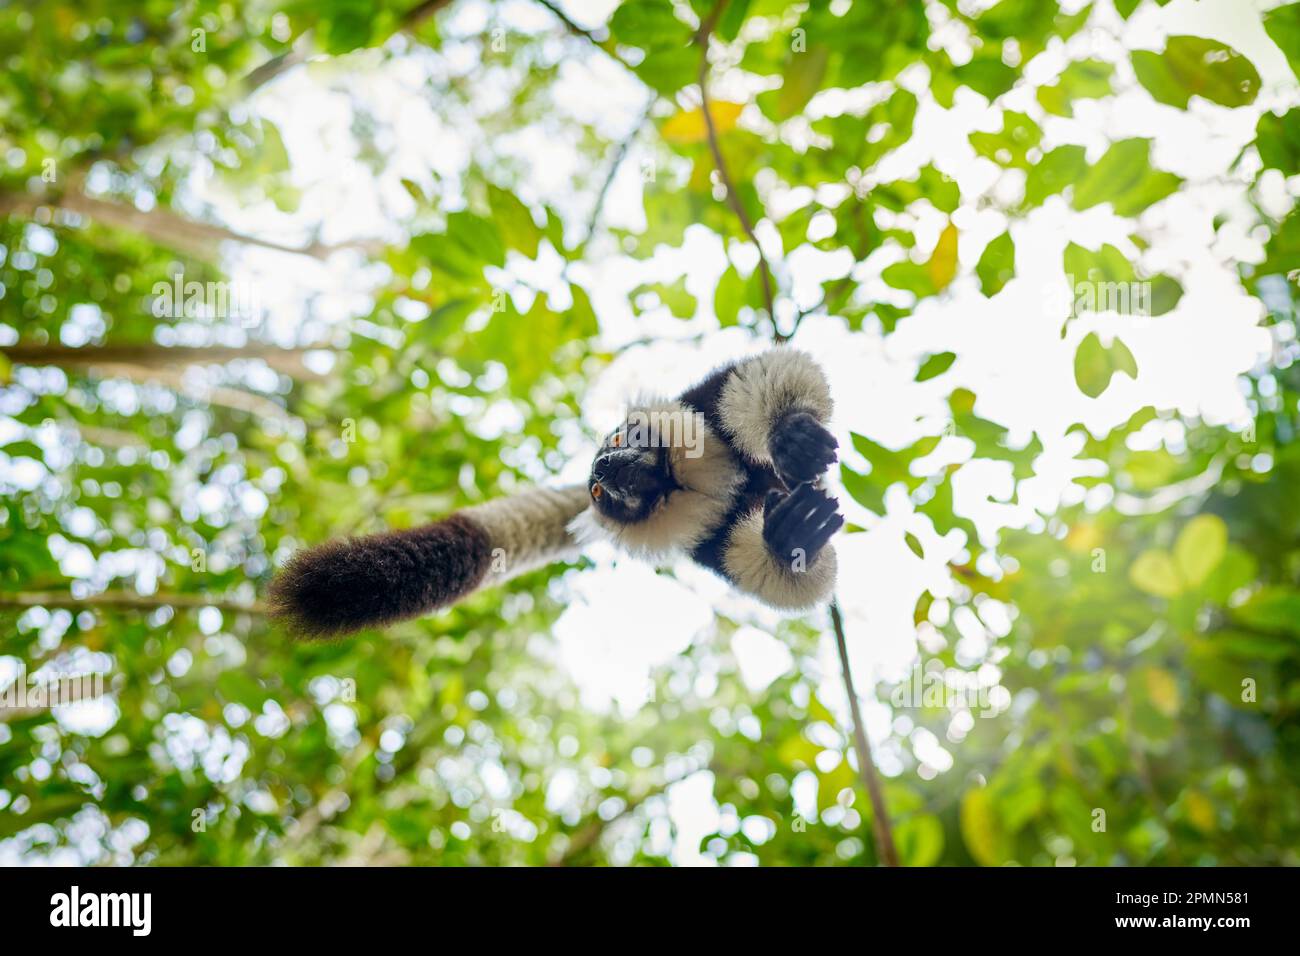 Madagascar fauna selvatica, foresta di Monkley salto mosca salto. Lemure bianco e nero, Varecia variegata, specie minacciate endemiche dell'isola di Madaga Foto Stock